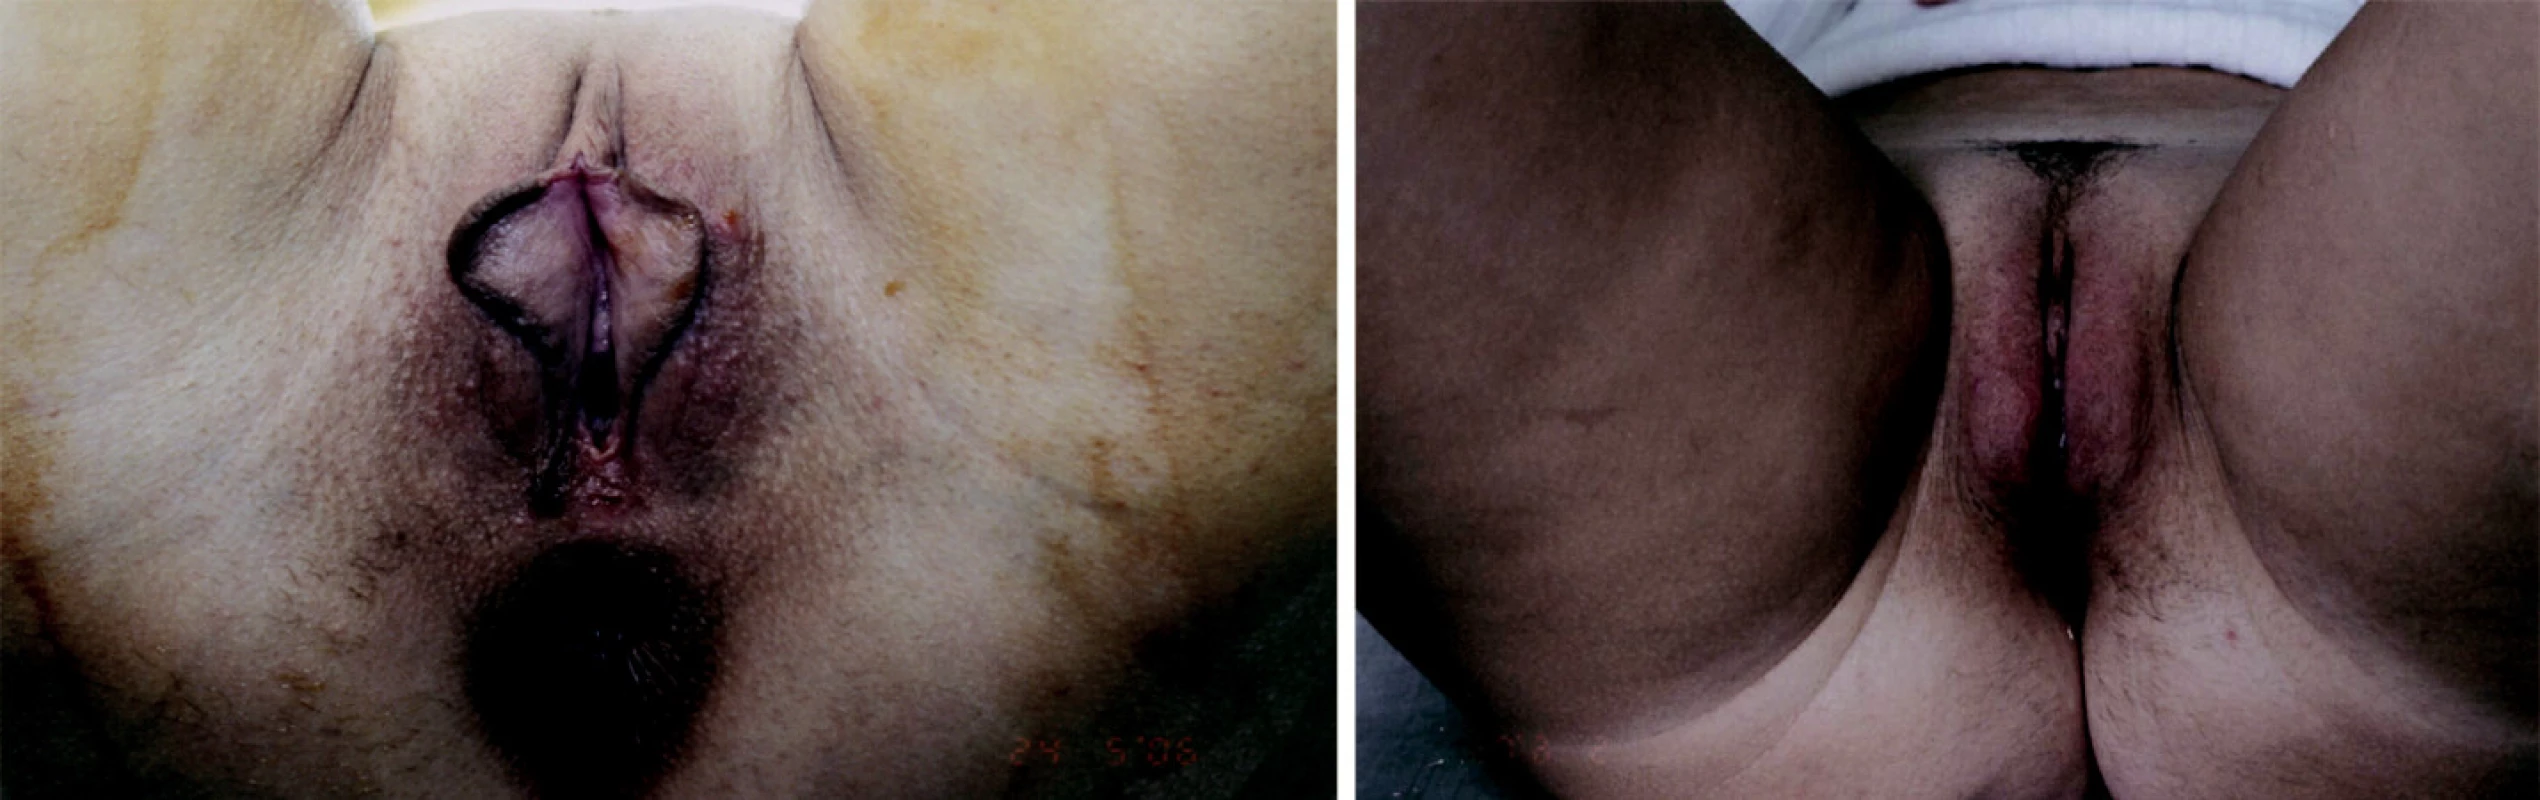 Stav před a po redukci malých stydkých pysků a zvětšení velkých stydkých pysků (foto z archivu J. Války).